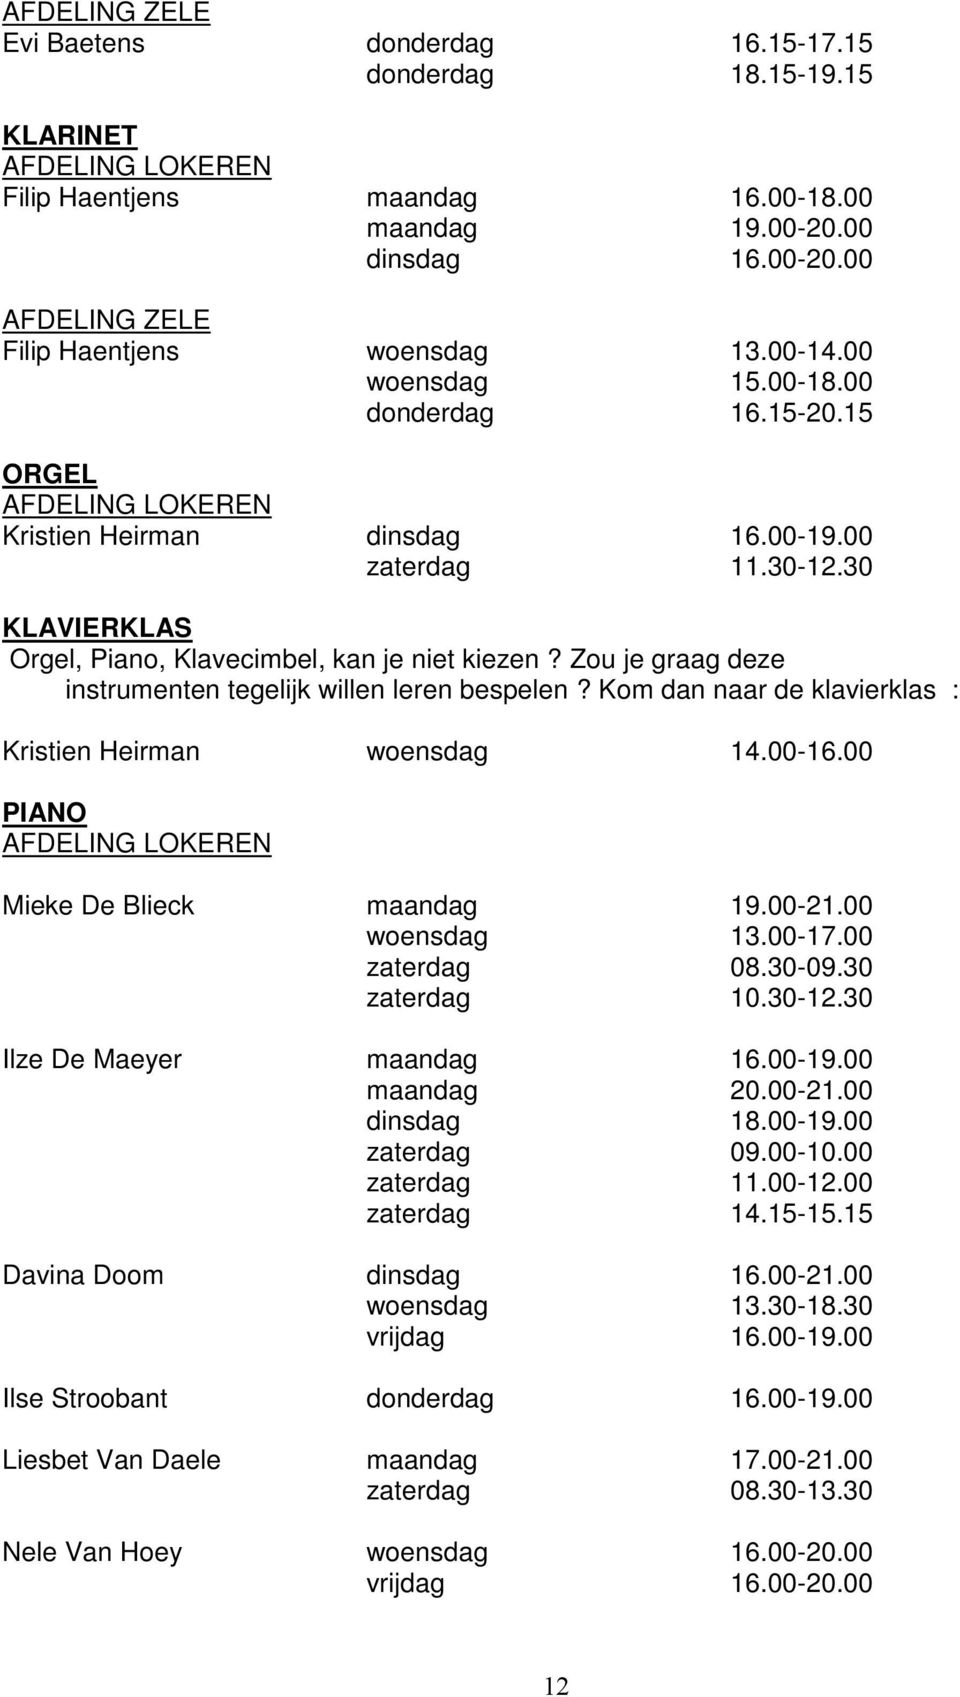 Kom dan naar de klavierklas : Kristien Heirman woensdag 14.00-16.00 PIANO Mieke De Blieck maandag 19.00-21.00 woensdag 13.00-17.00 zaterdag 08.30-09.30 zaterdag 10.30-12.30 Ilze De Maeyer maandag 16.